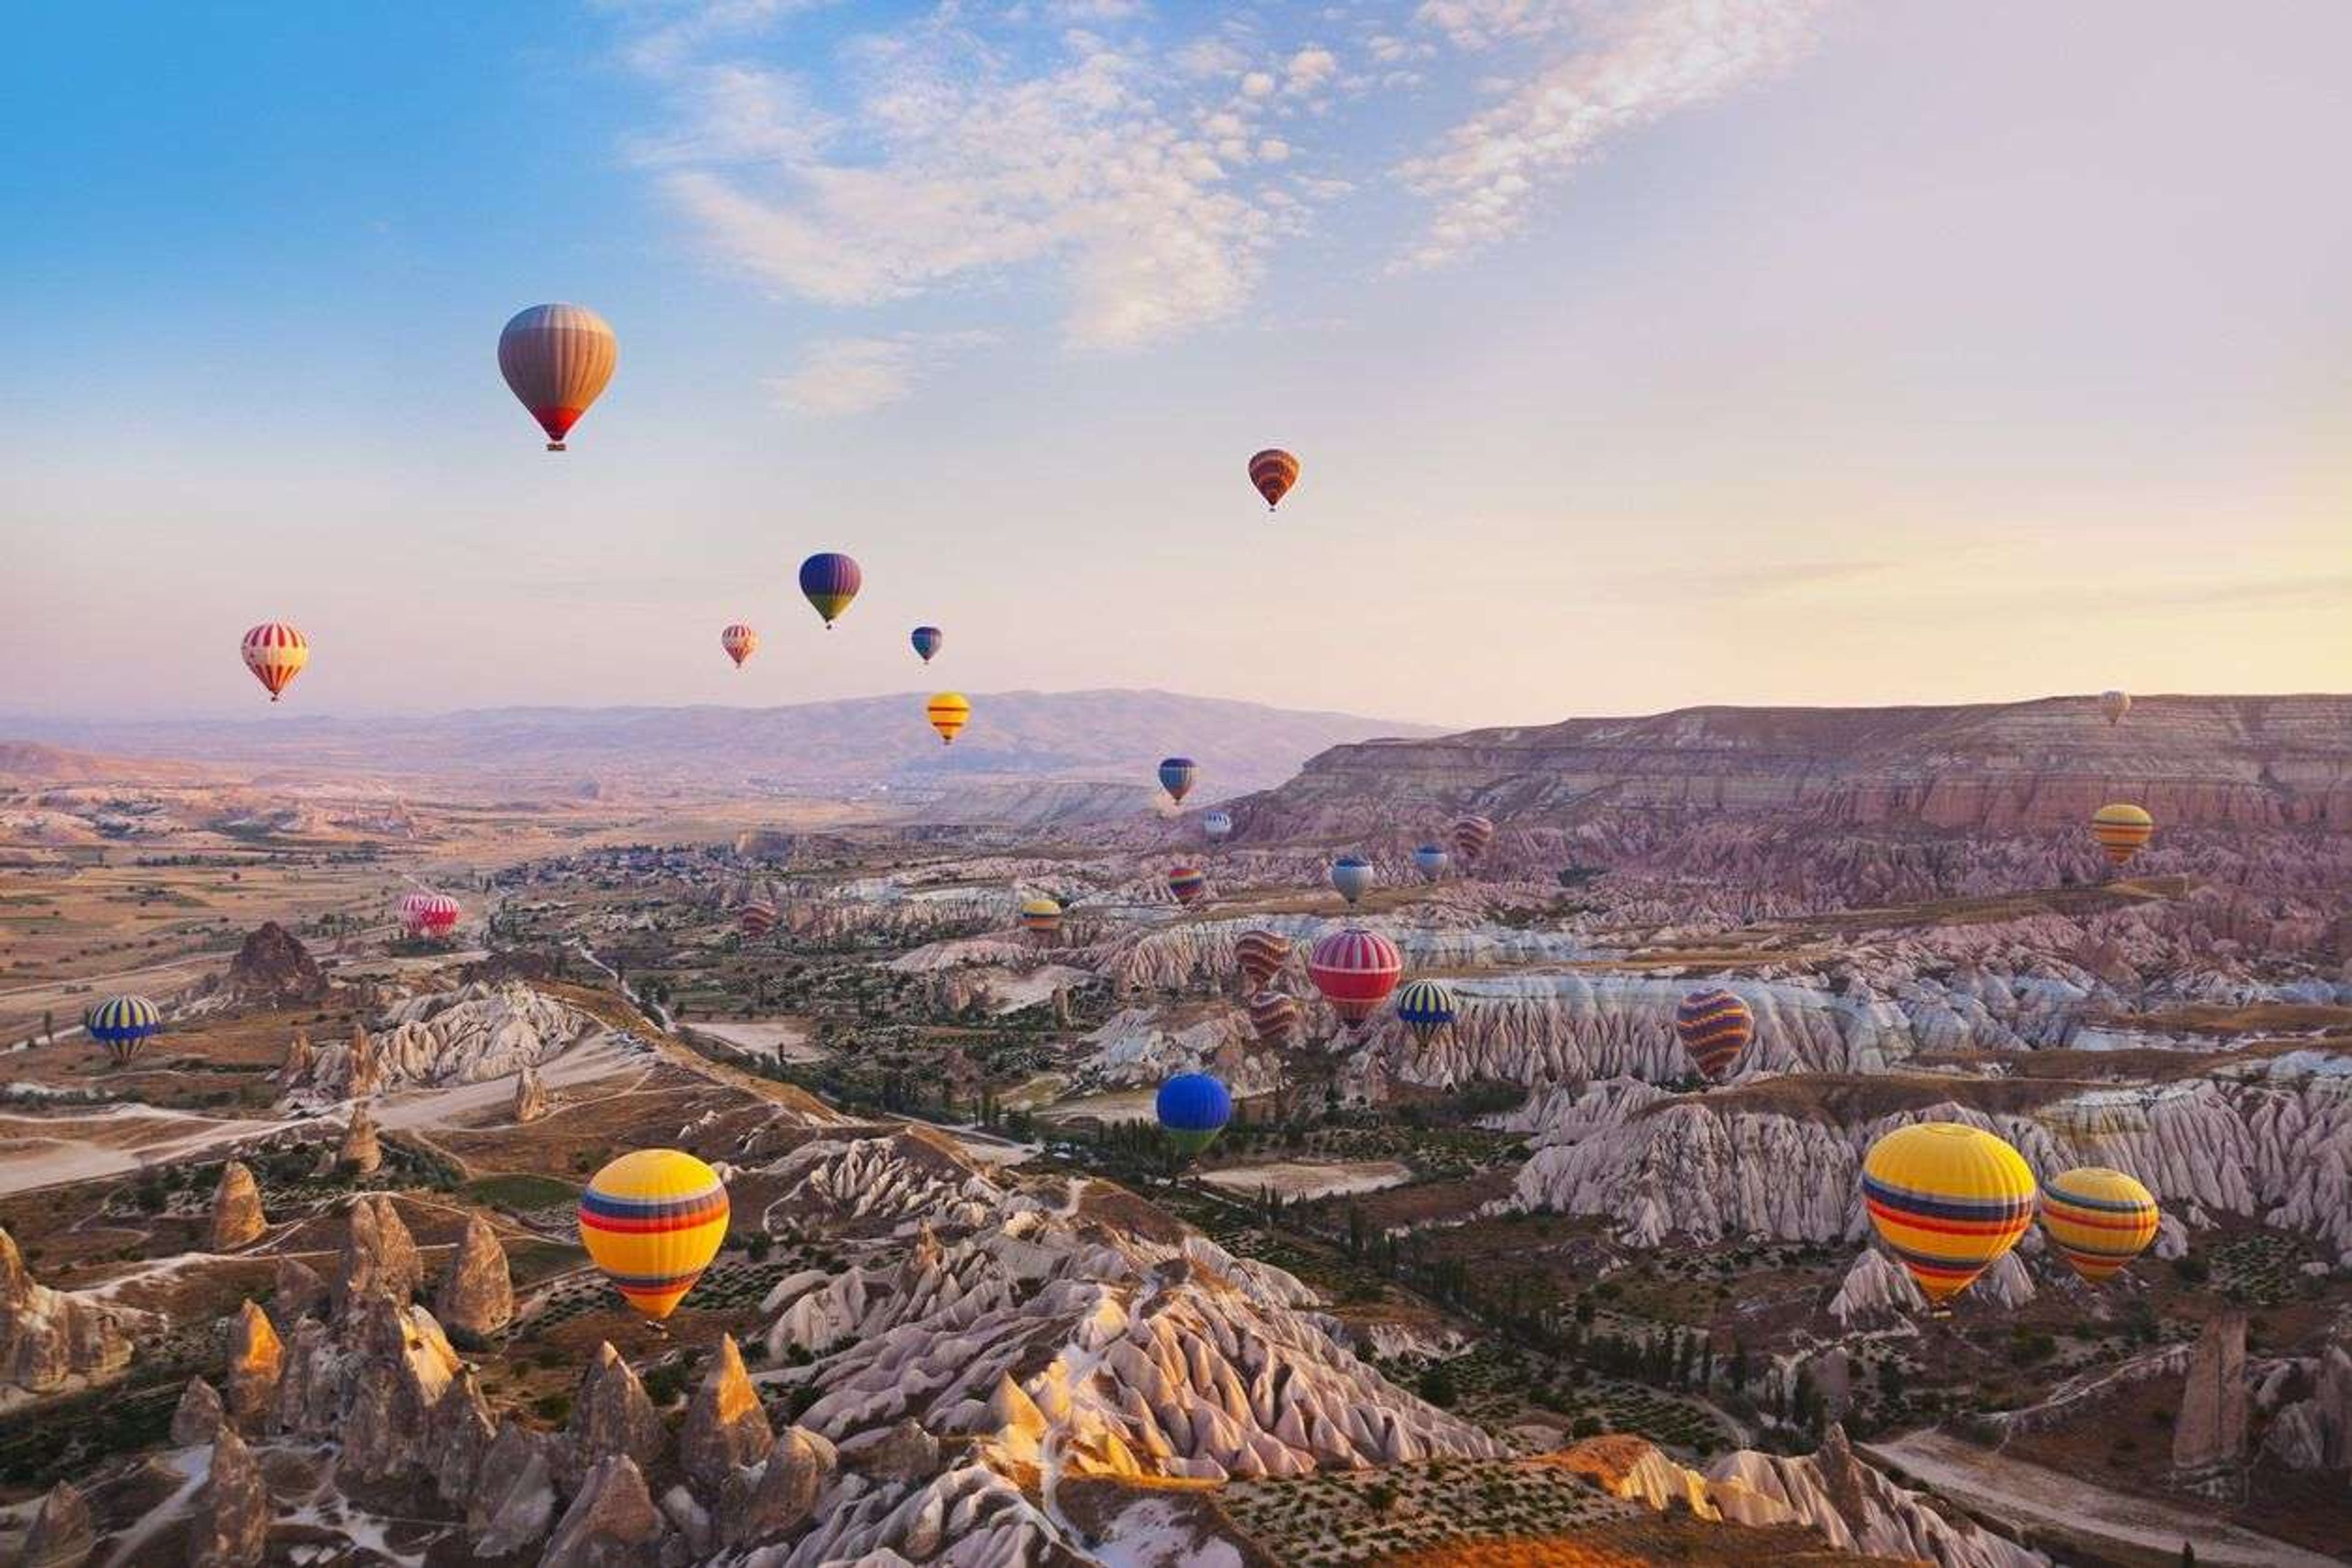 Cappadocië